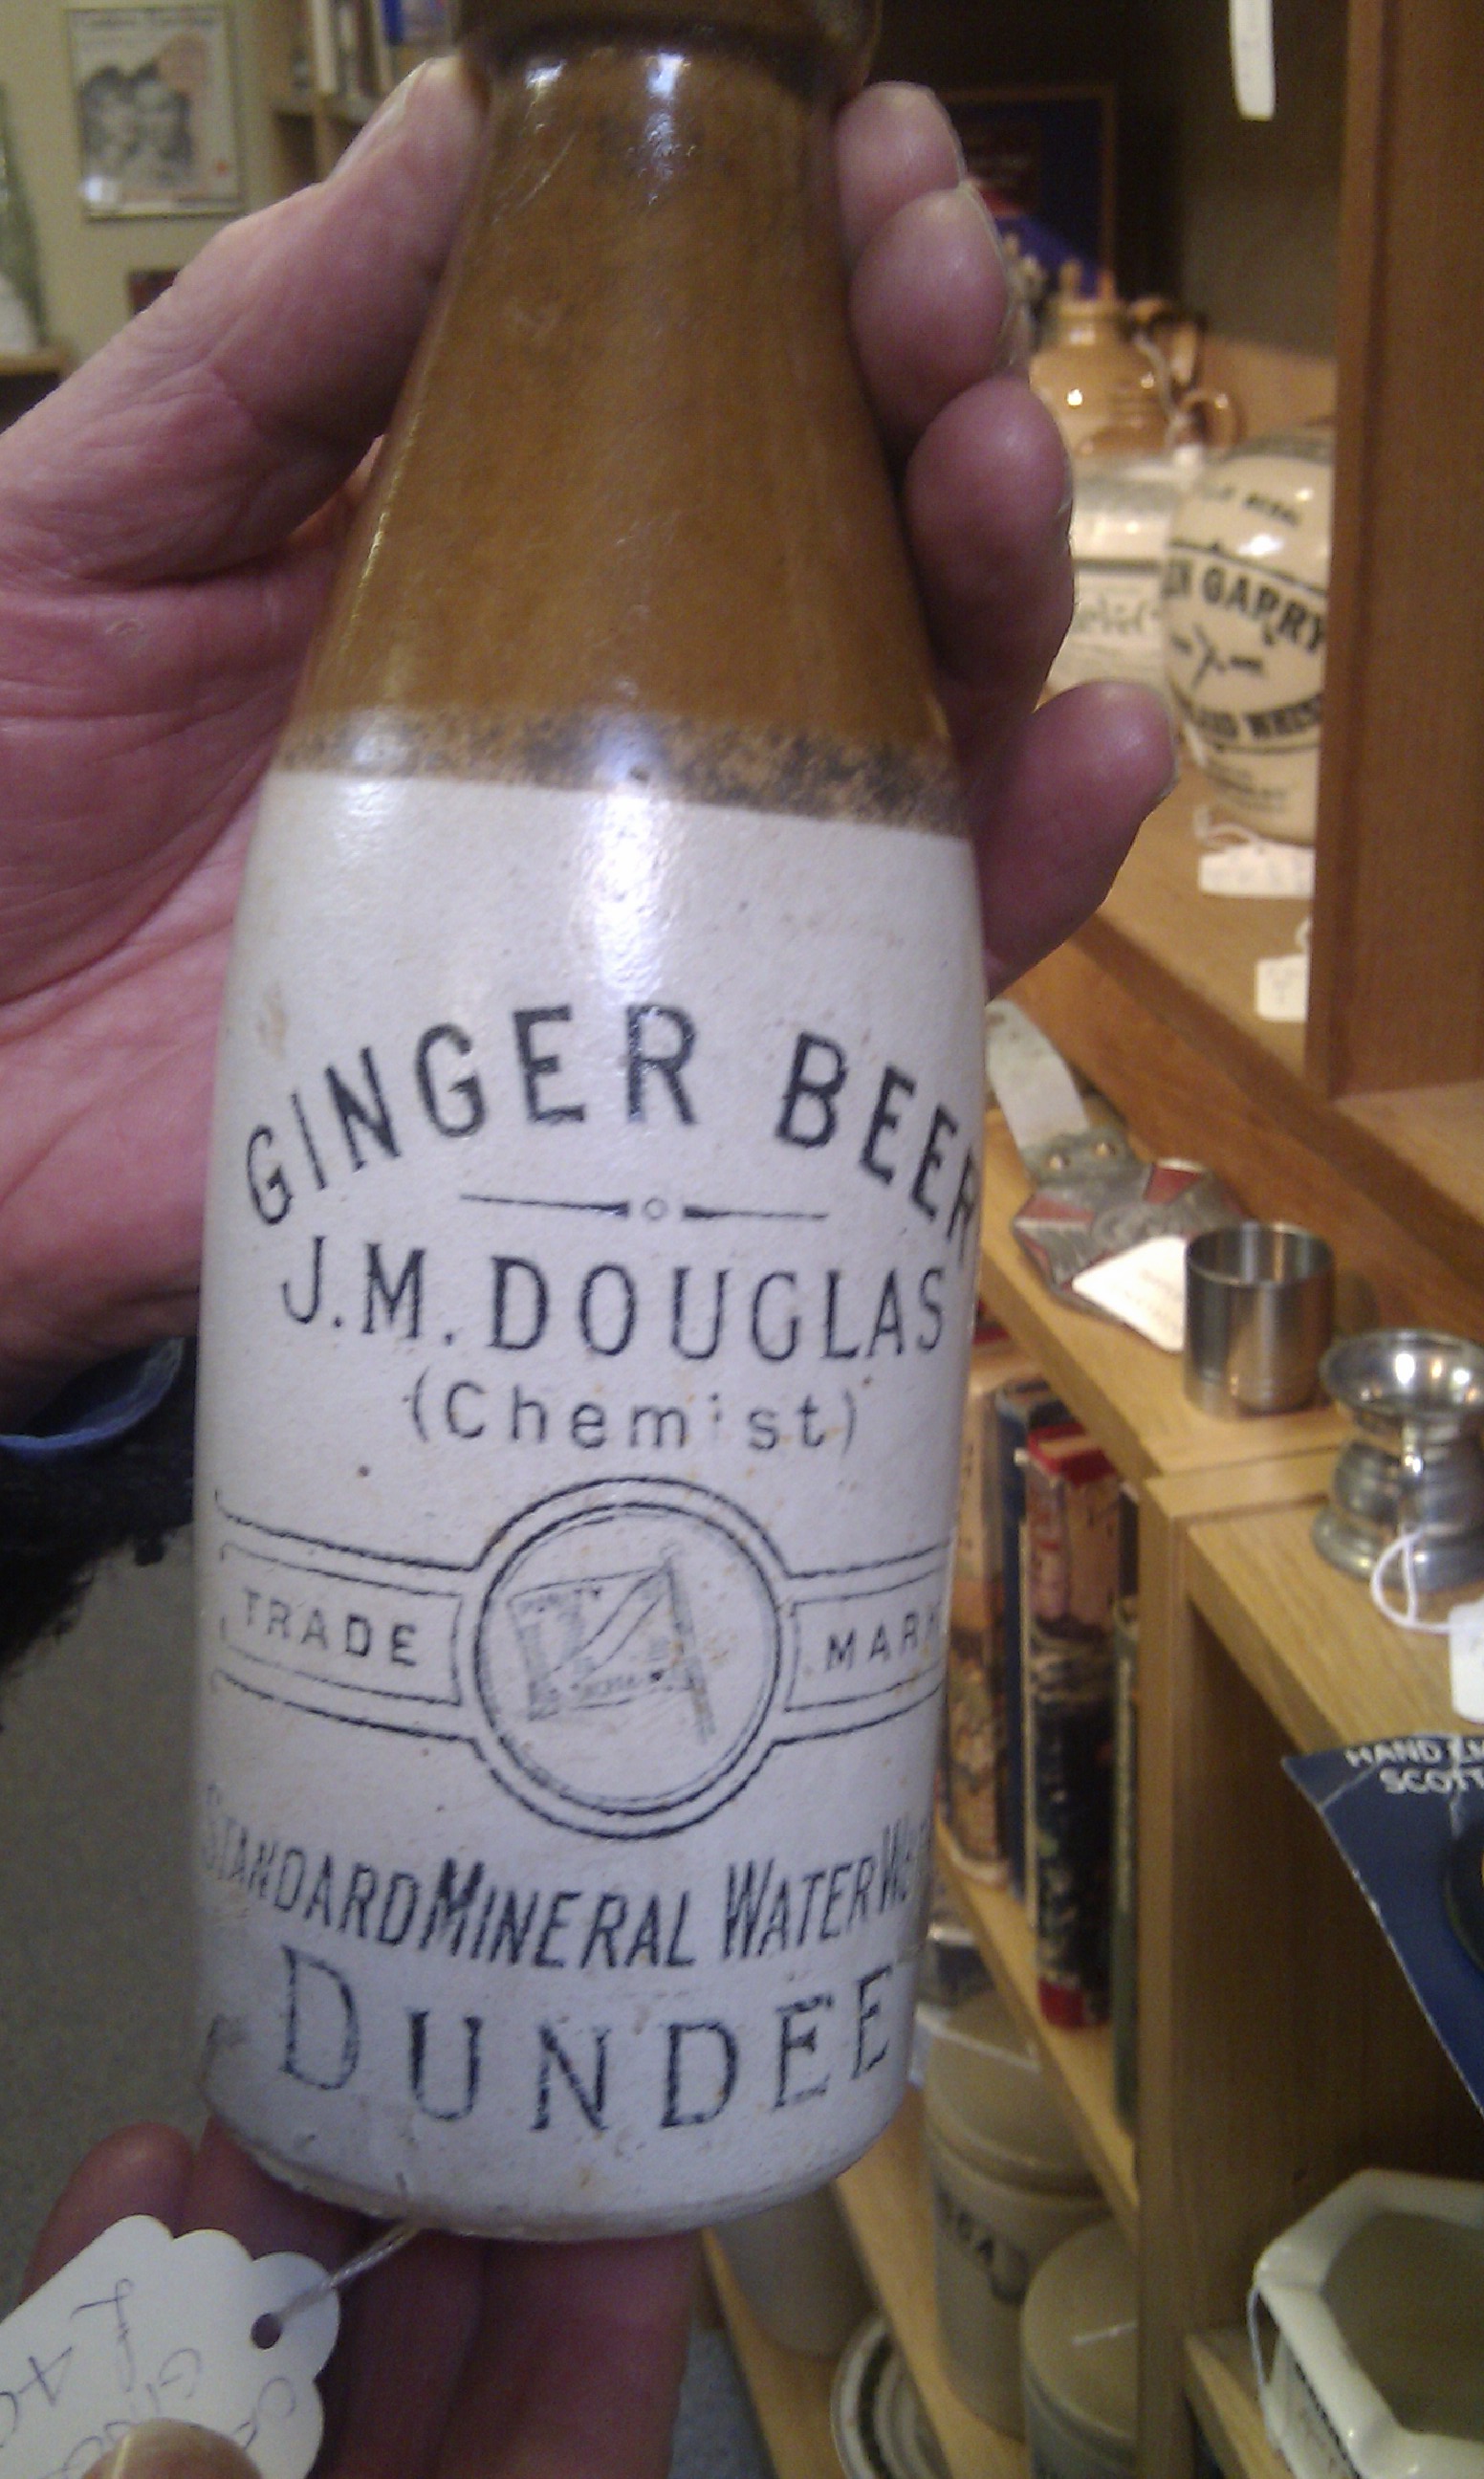 Ginger beer bottle